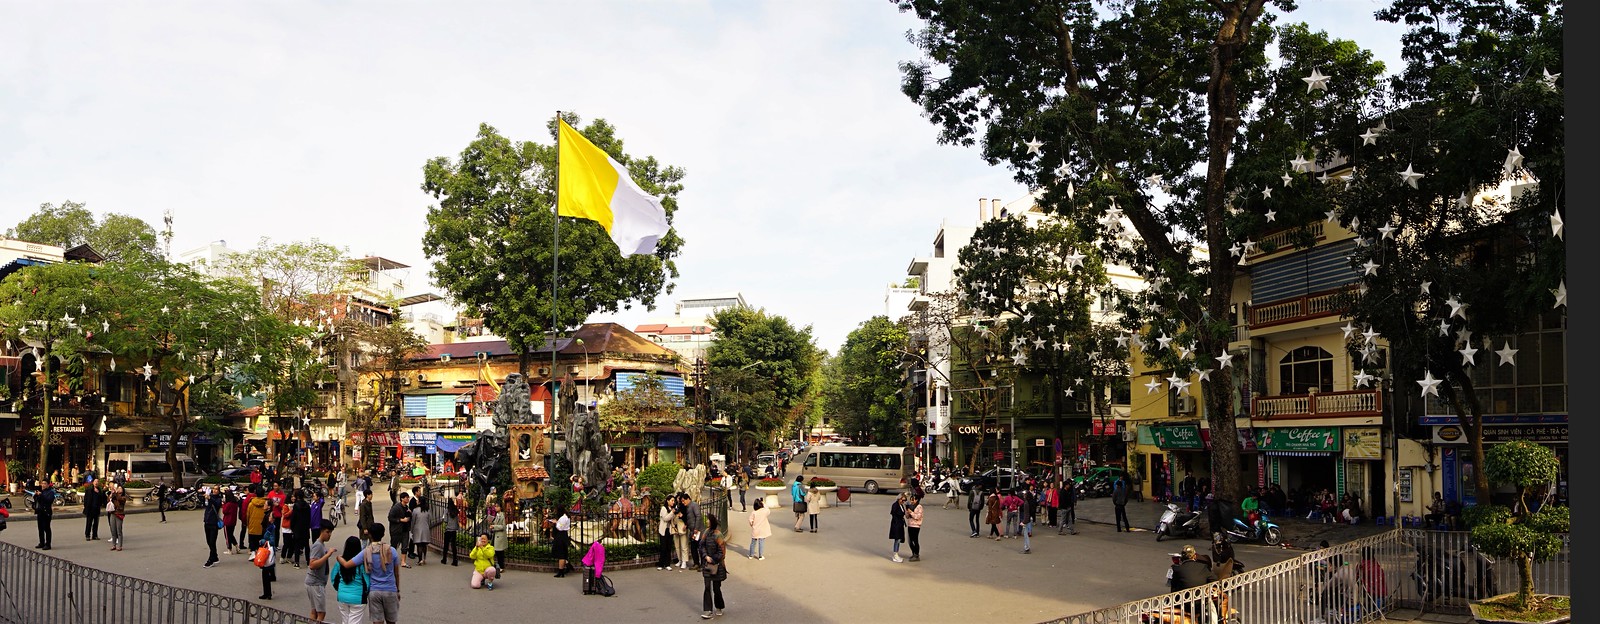 Completando el círculo: regreso a Hanoi - VIETNAM, TIERRA DE DRAGONES (10)